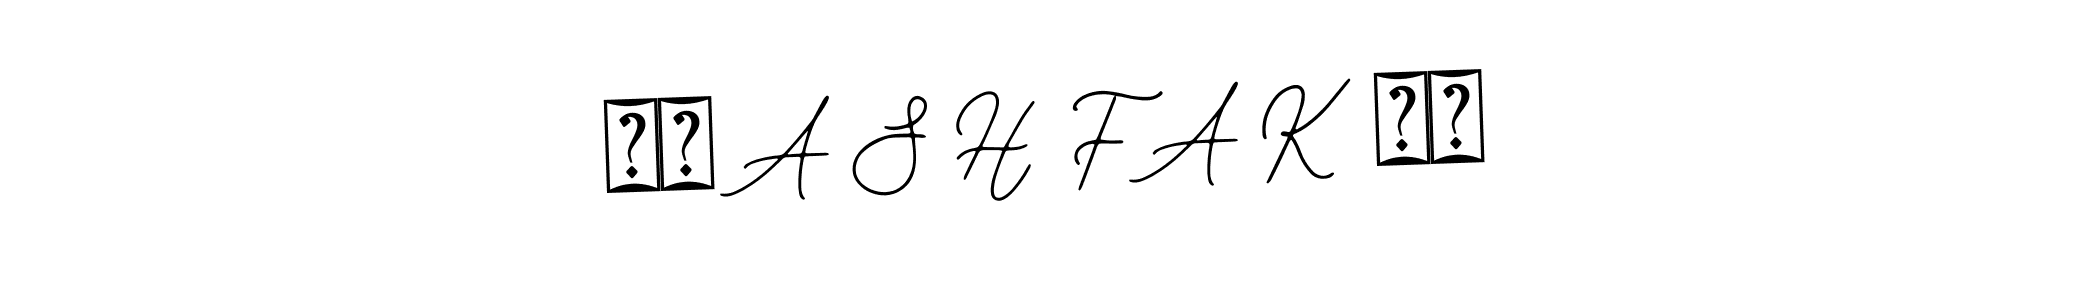 ππ A S H F A K ππ stylish signature style. Best Handwritten Sign (Bearetta-2O07w) for my name. Handwritten Signature Collection Ideas for my name ππ A S H F A K ππ. ππ A S H F A K ππ signature style 12 images and pictures png